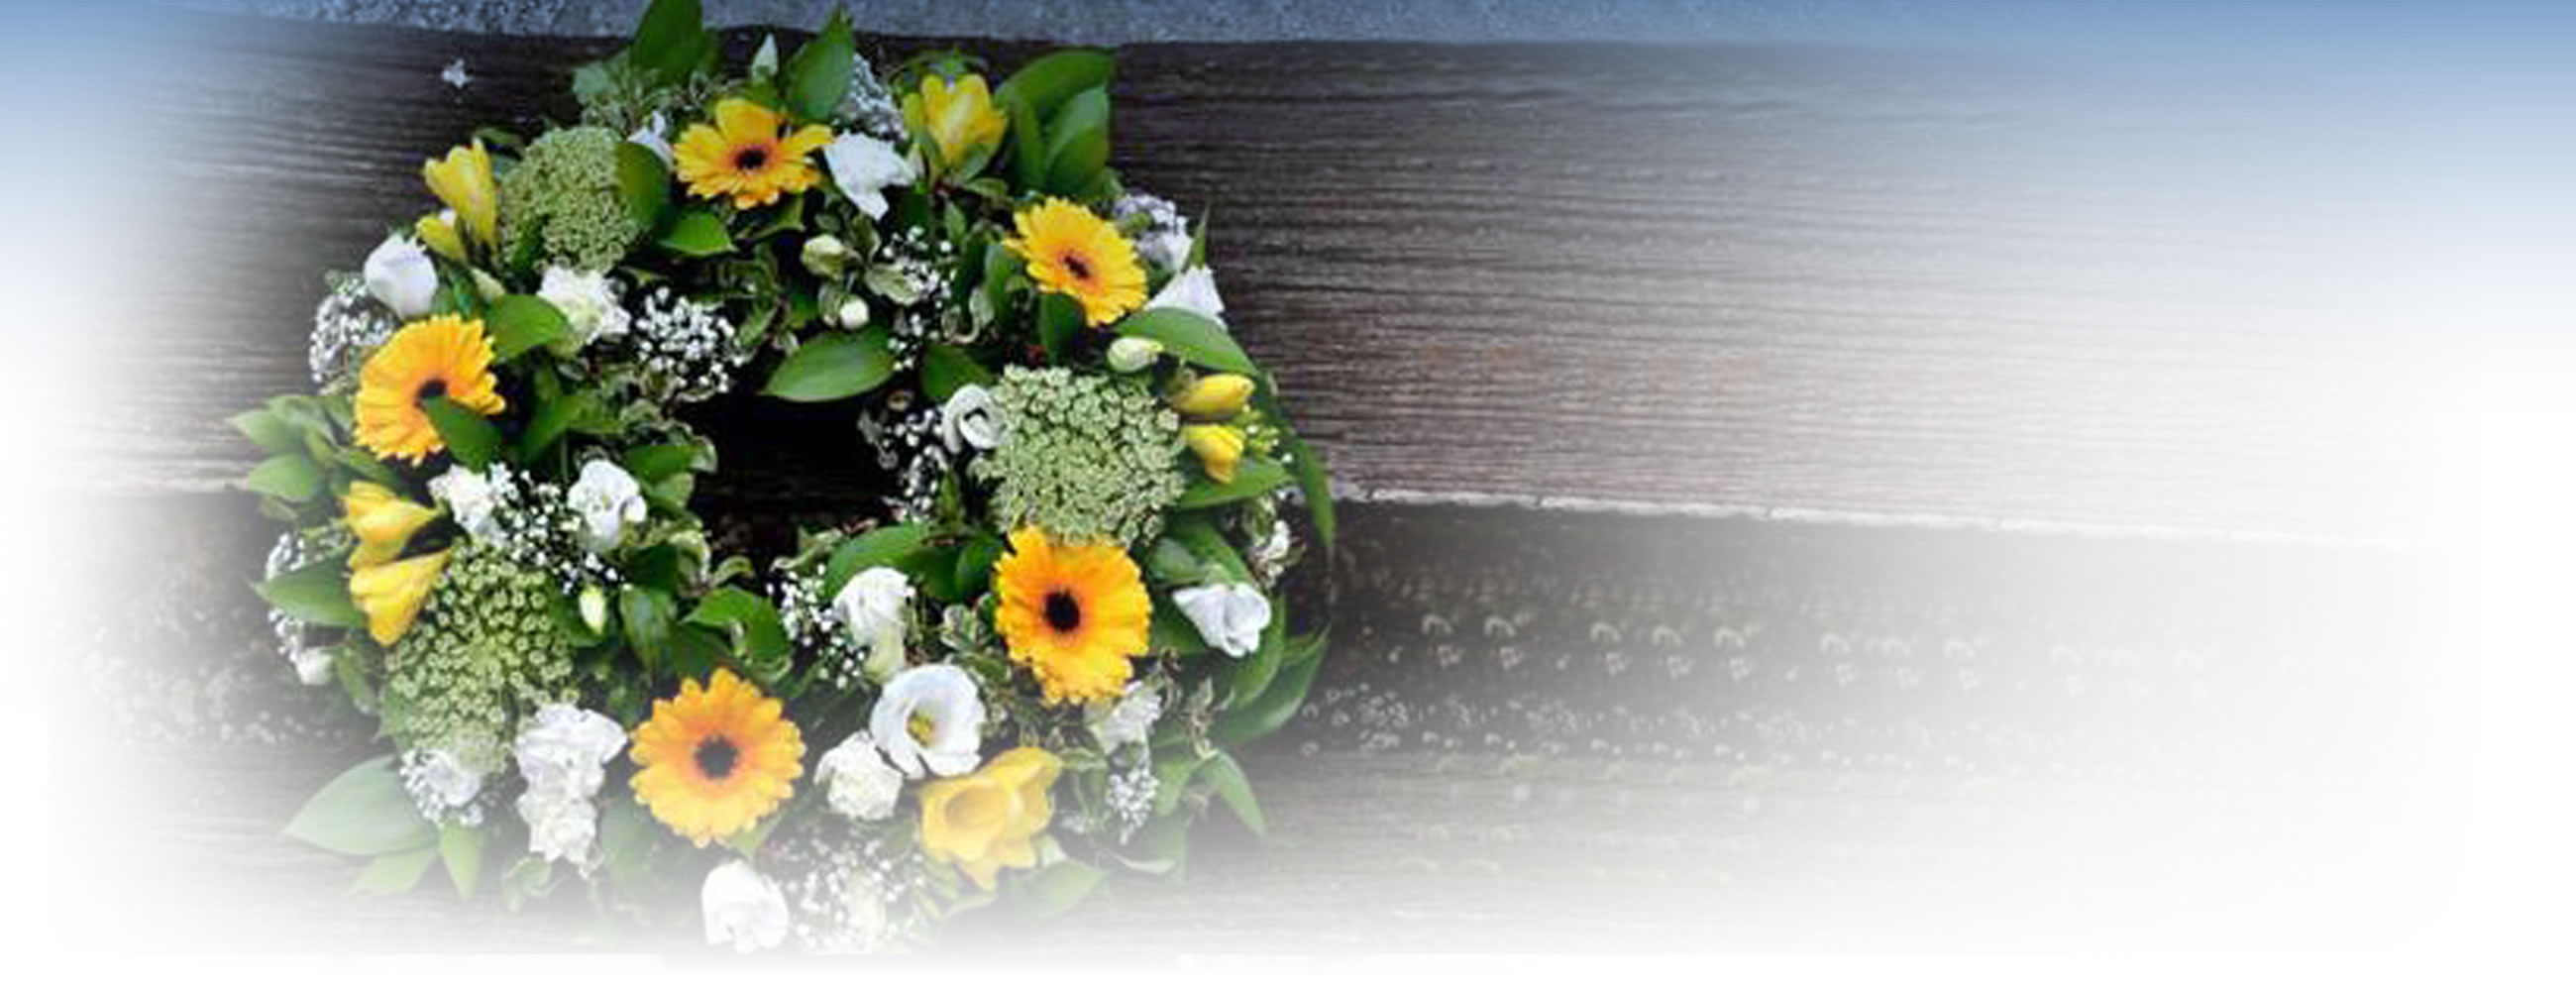 Harwood Park floral tributes